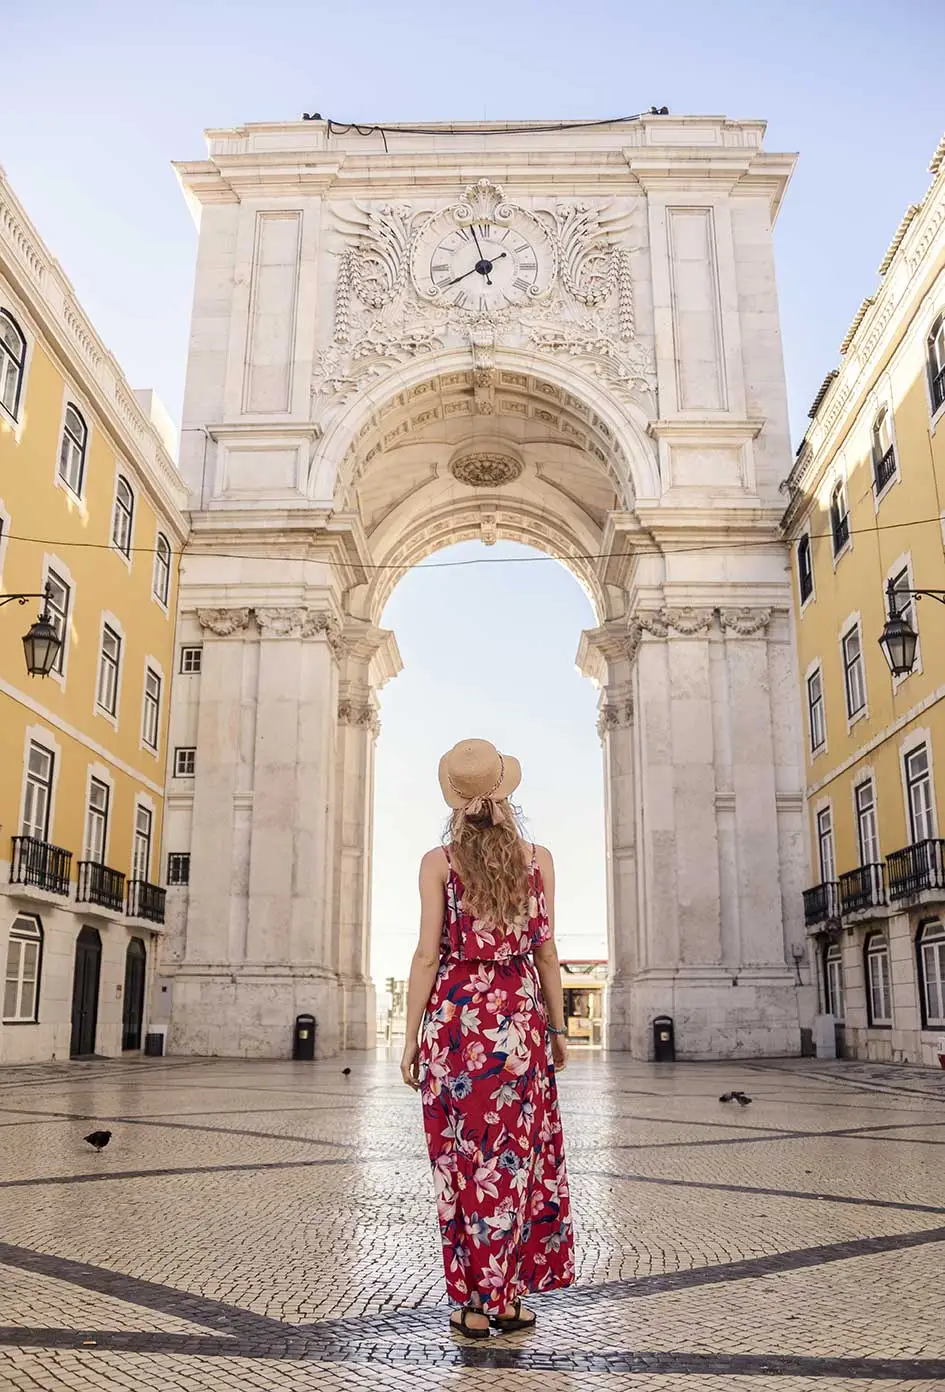 explore Lisbon's architectural wonders